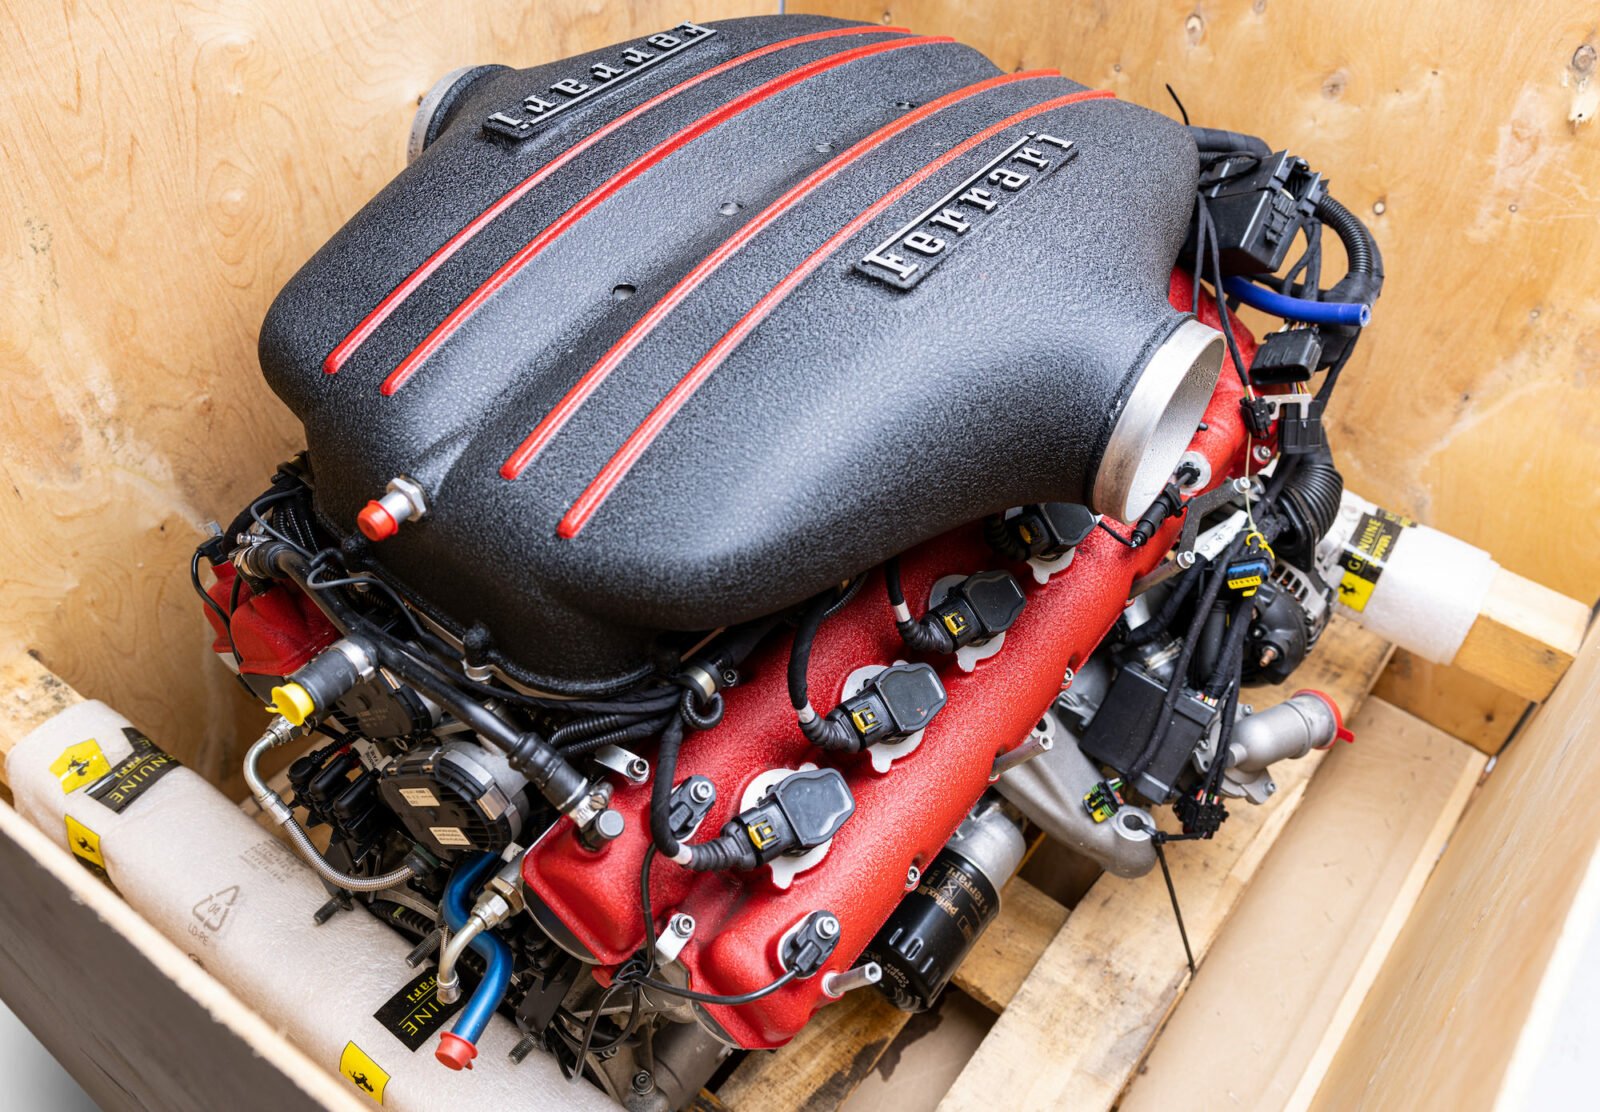 NOS Ferrari FXX Engine In Factory Crate